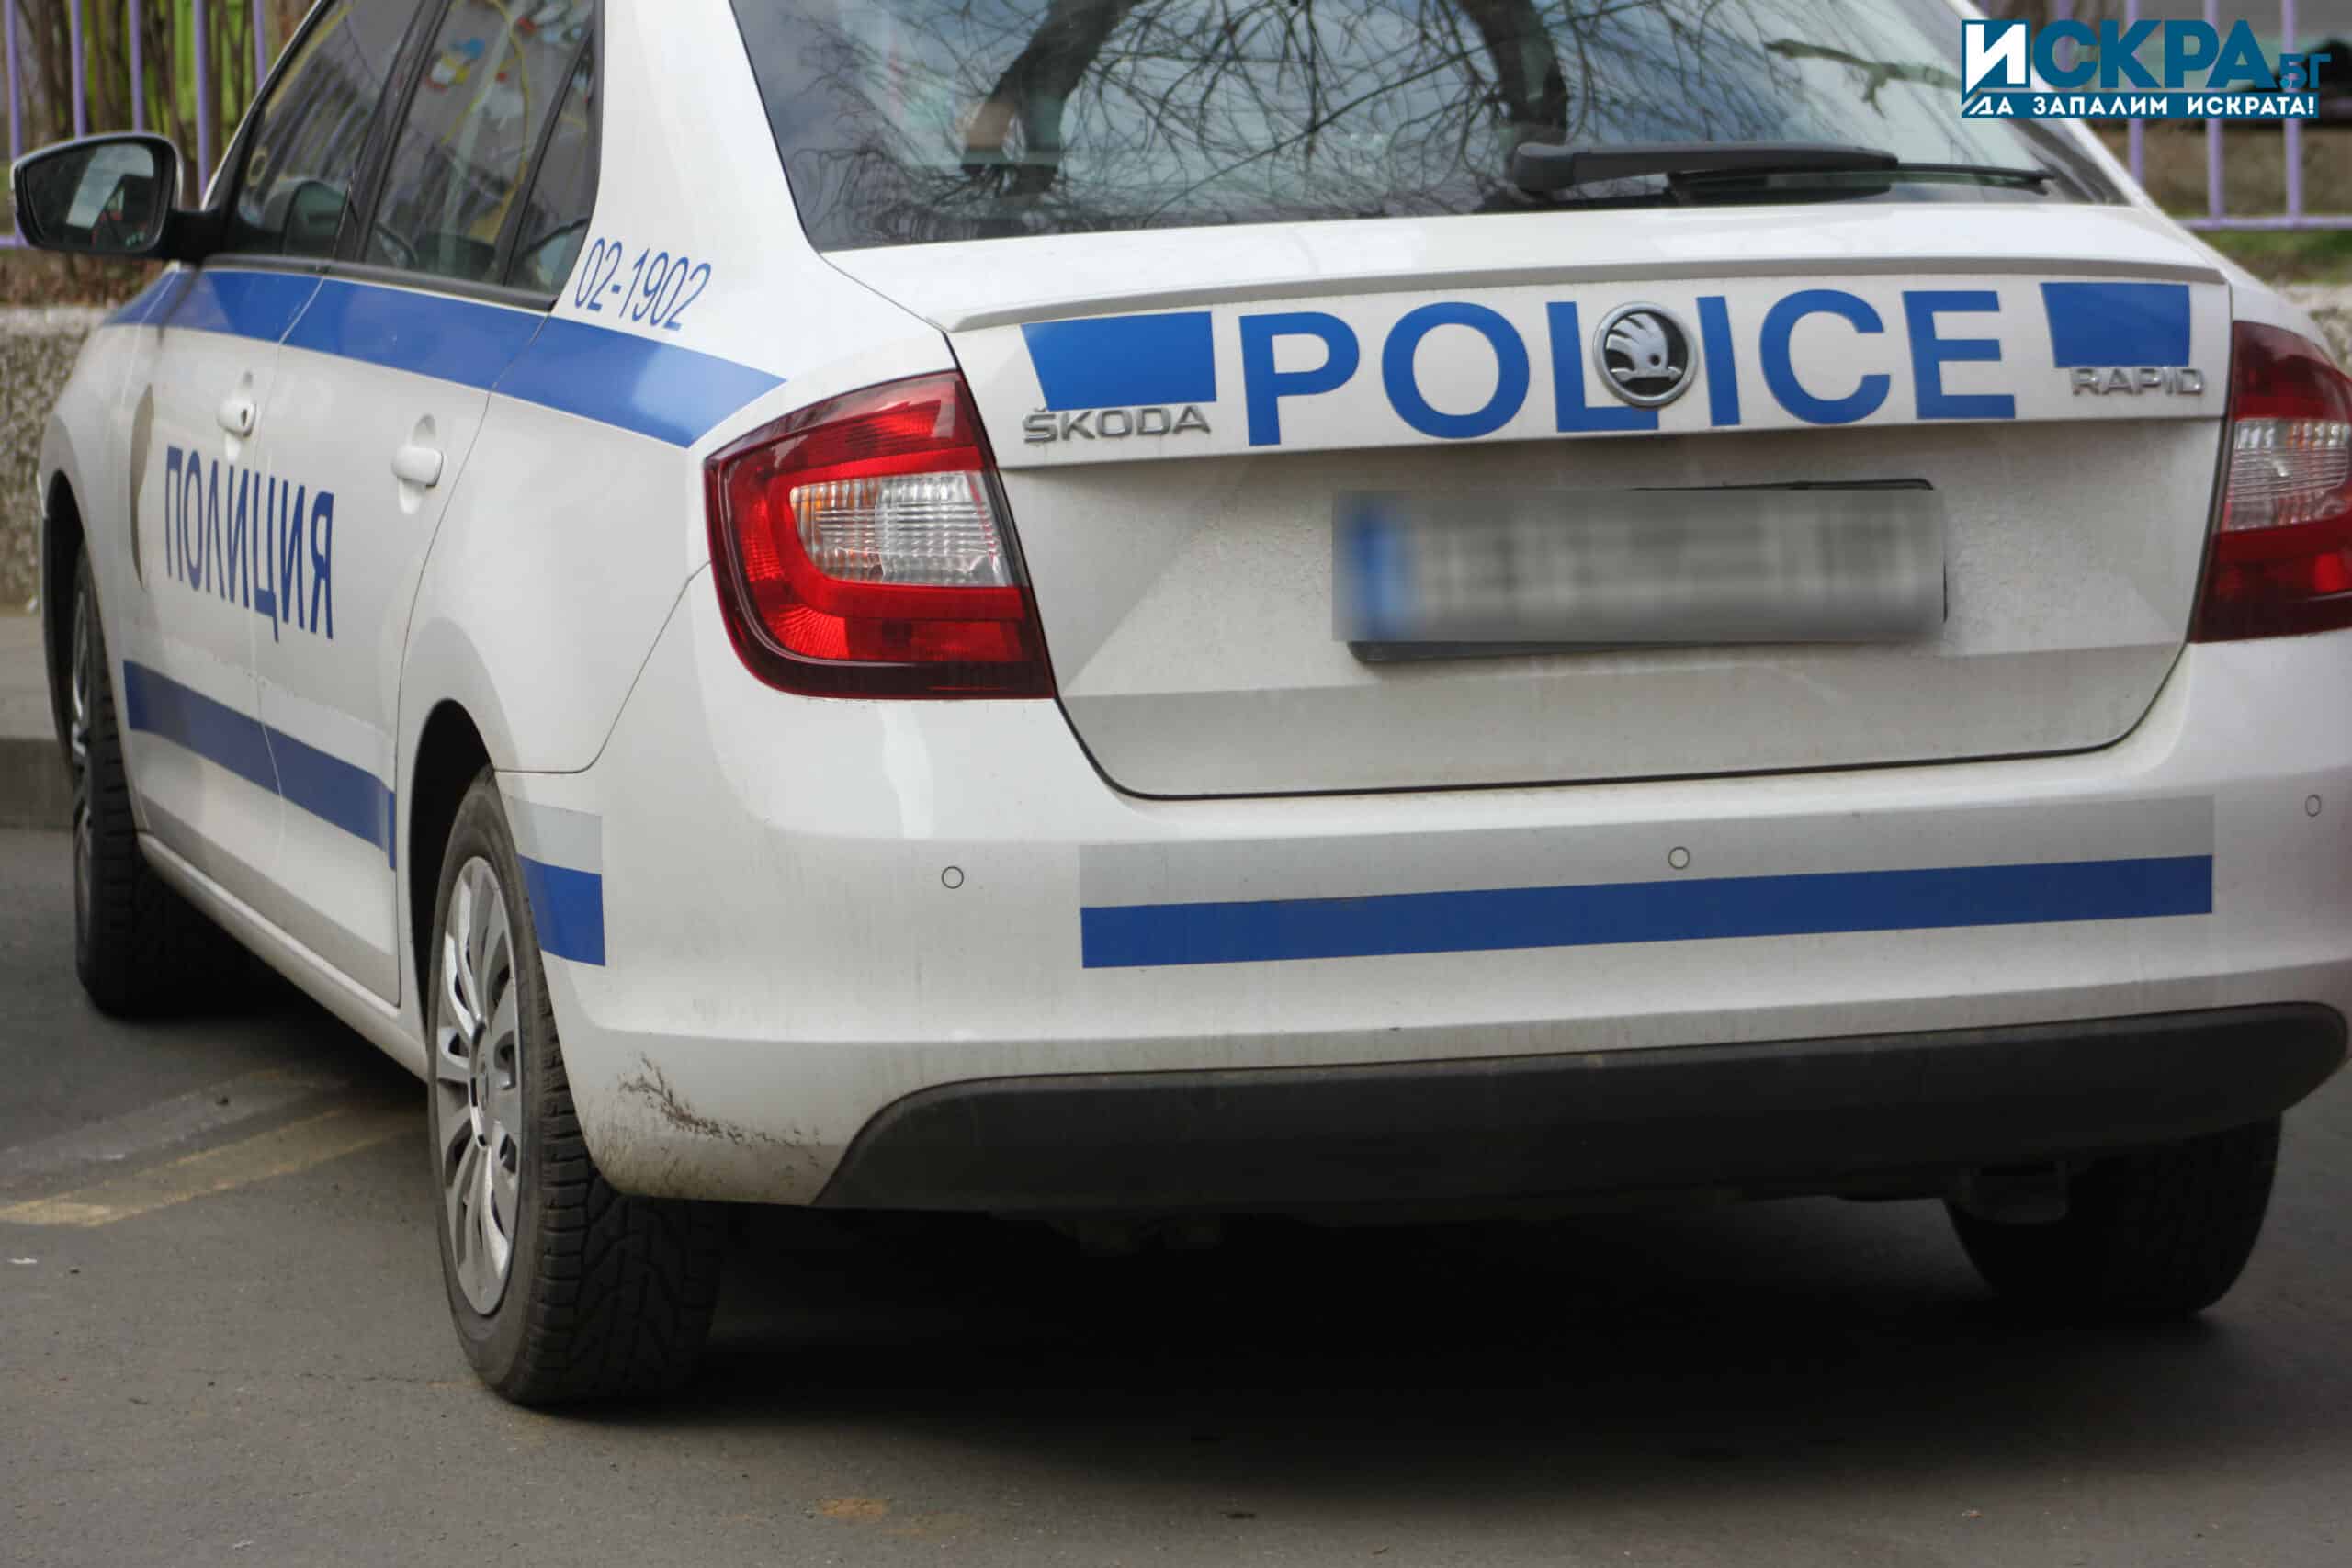 ОДМВР Бургас разкри случай на телефонна измама за сумата от 40